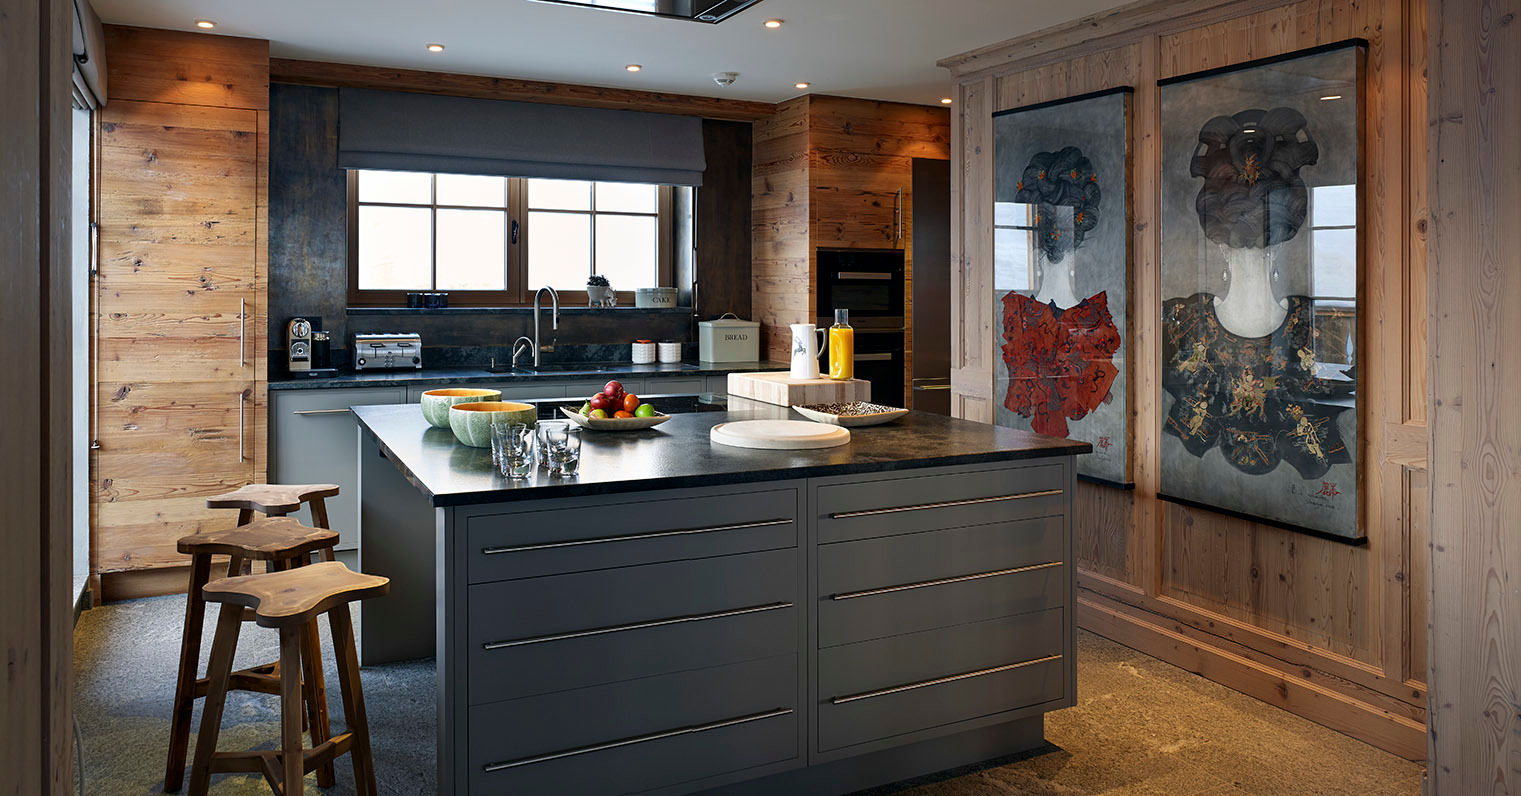 Skyfall Kitchen Architectural Interiors + Superyacht Photographer Cocinas de estilo escandinavo